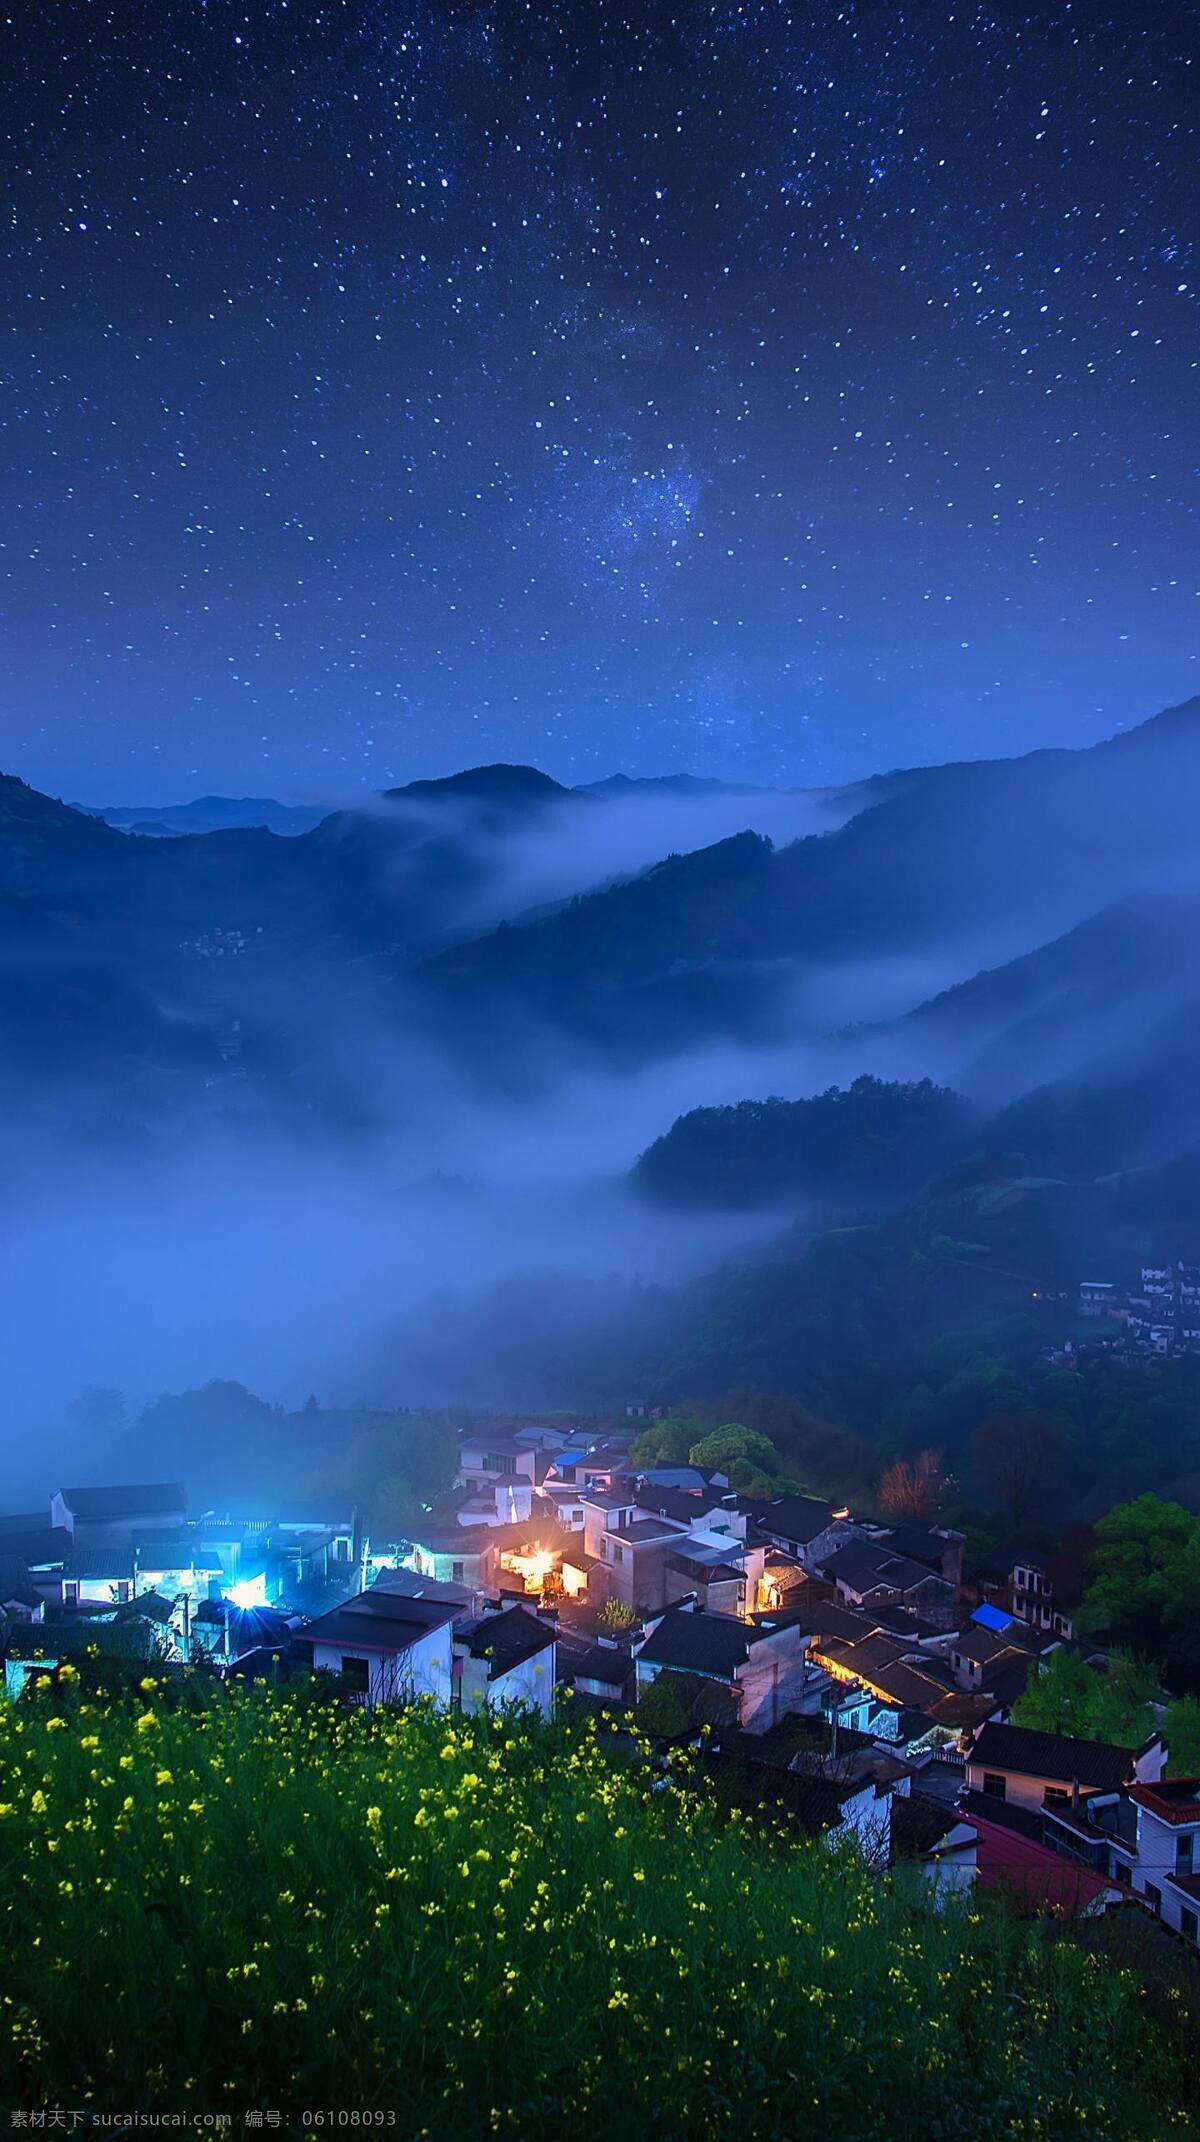 山村风光 农房 油菜花 夜晚 星空 迷雾 山峦 旅游摄影 自然风景